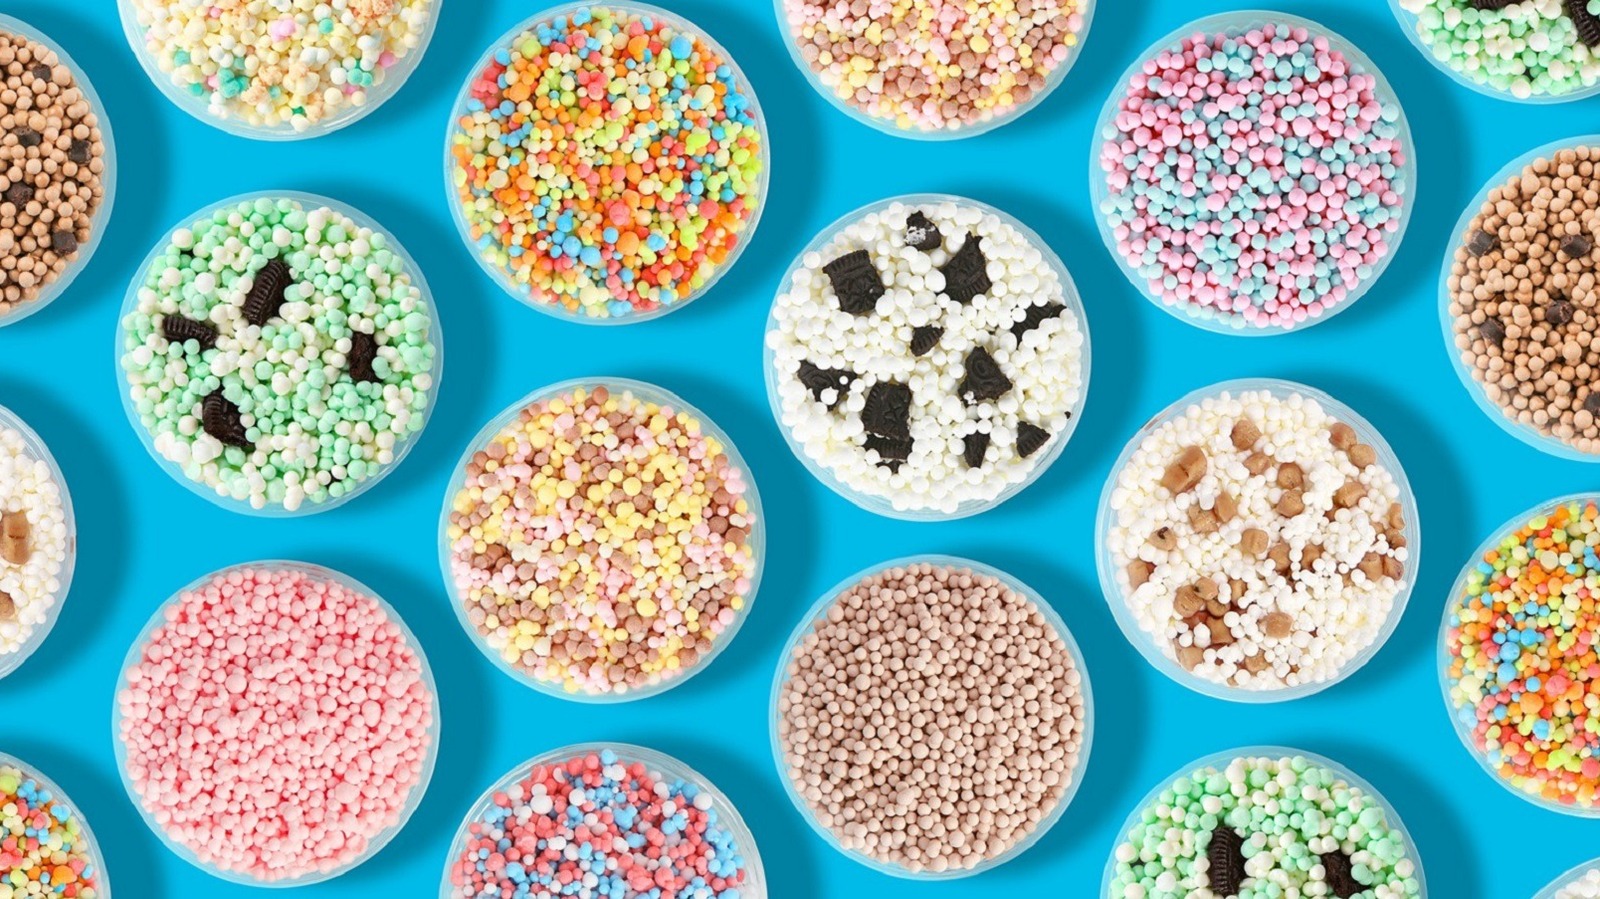 NEW Dippin' Dots Dipping Dots Frozen Dot Maker Set Brand Retired